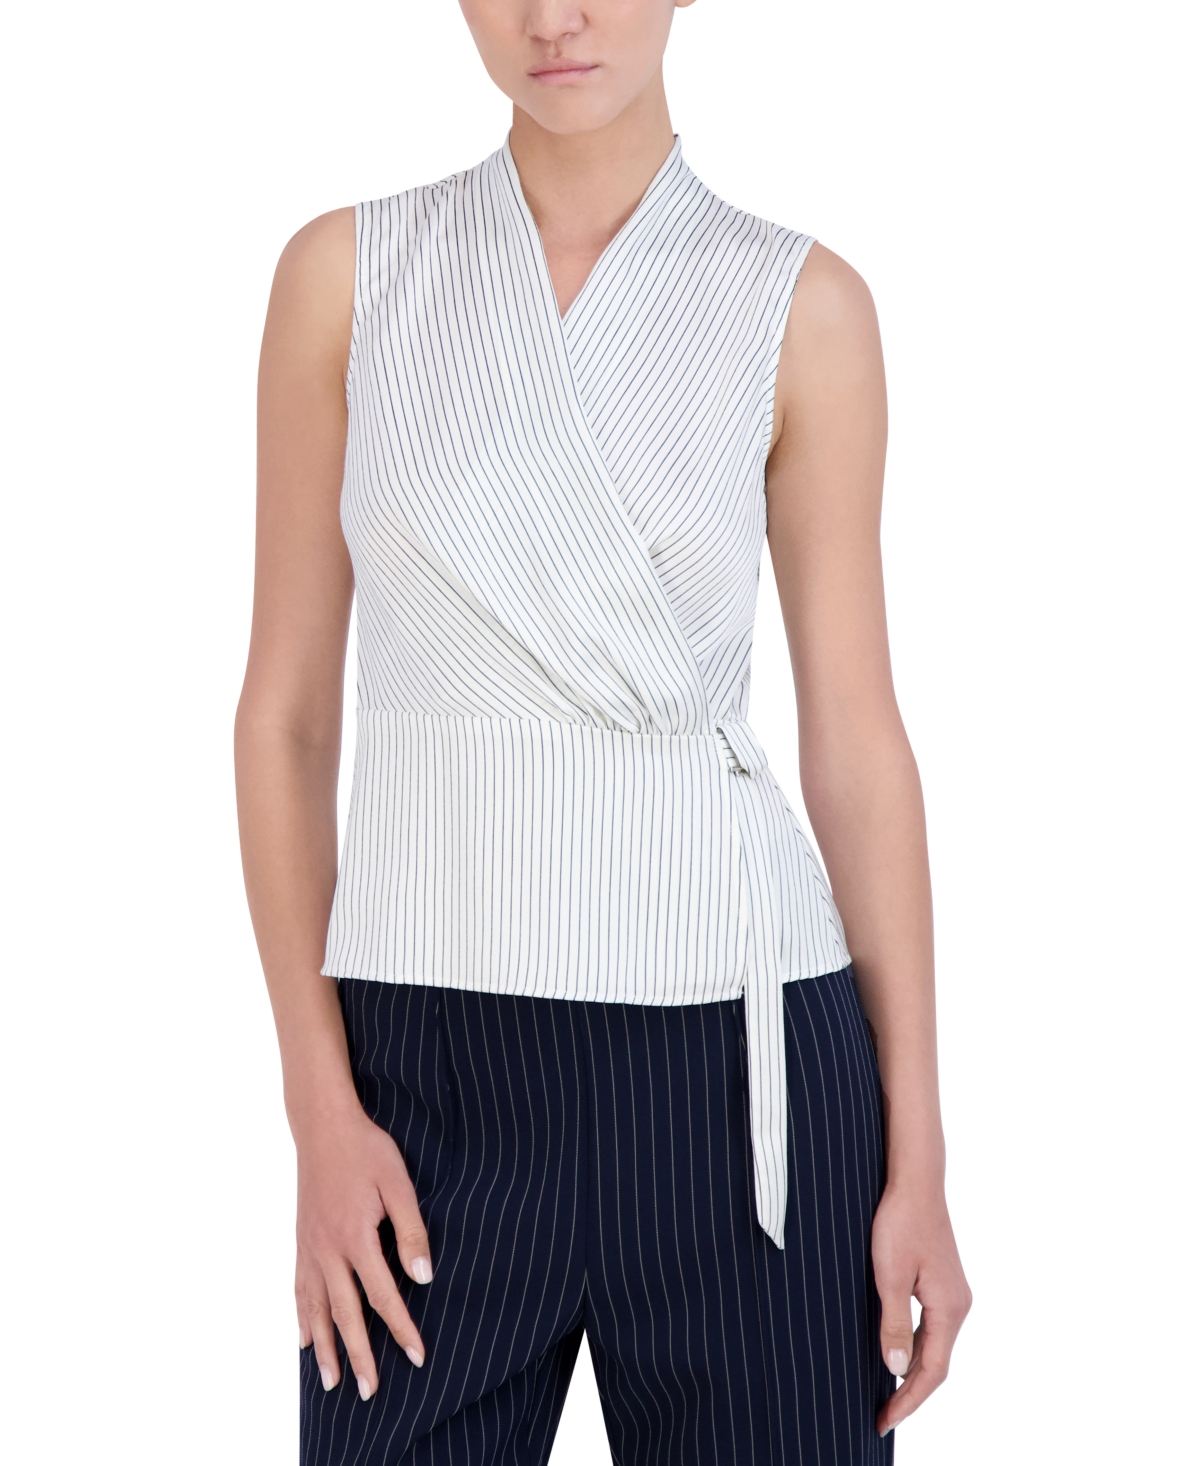 Women's Pinstripe Sleeveless Wrap Top - White/navy